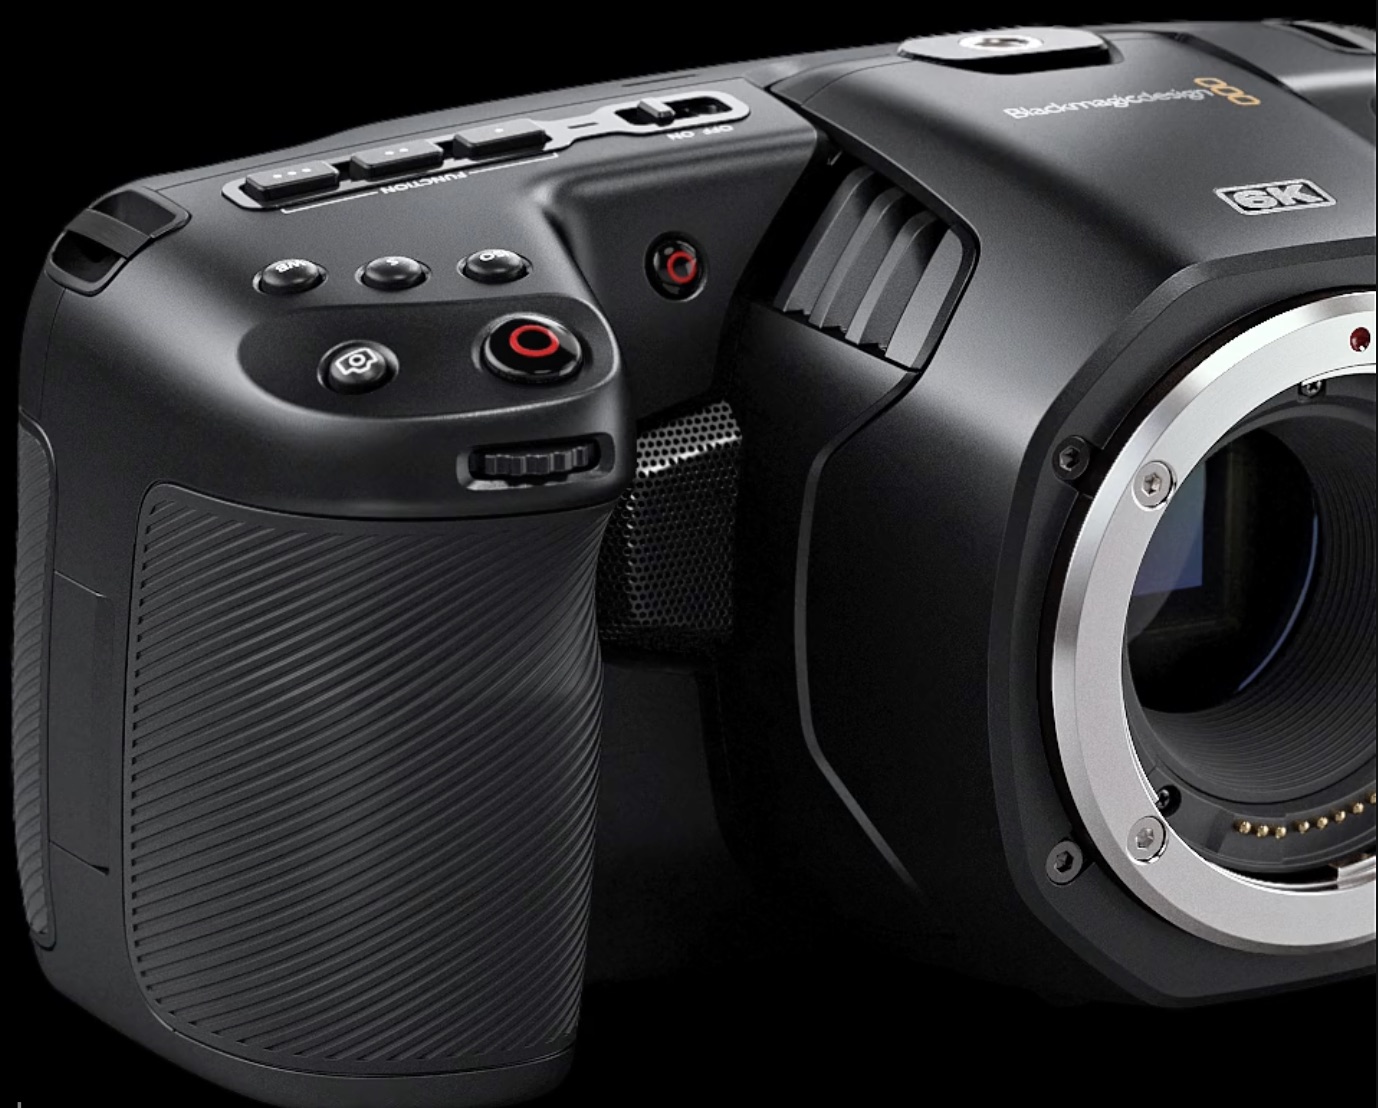 blackmagic 6k pro lens